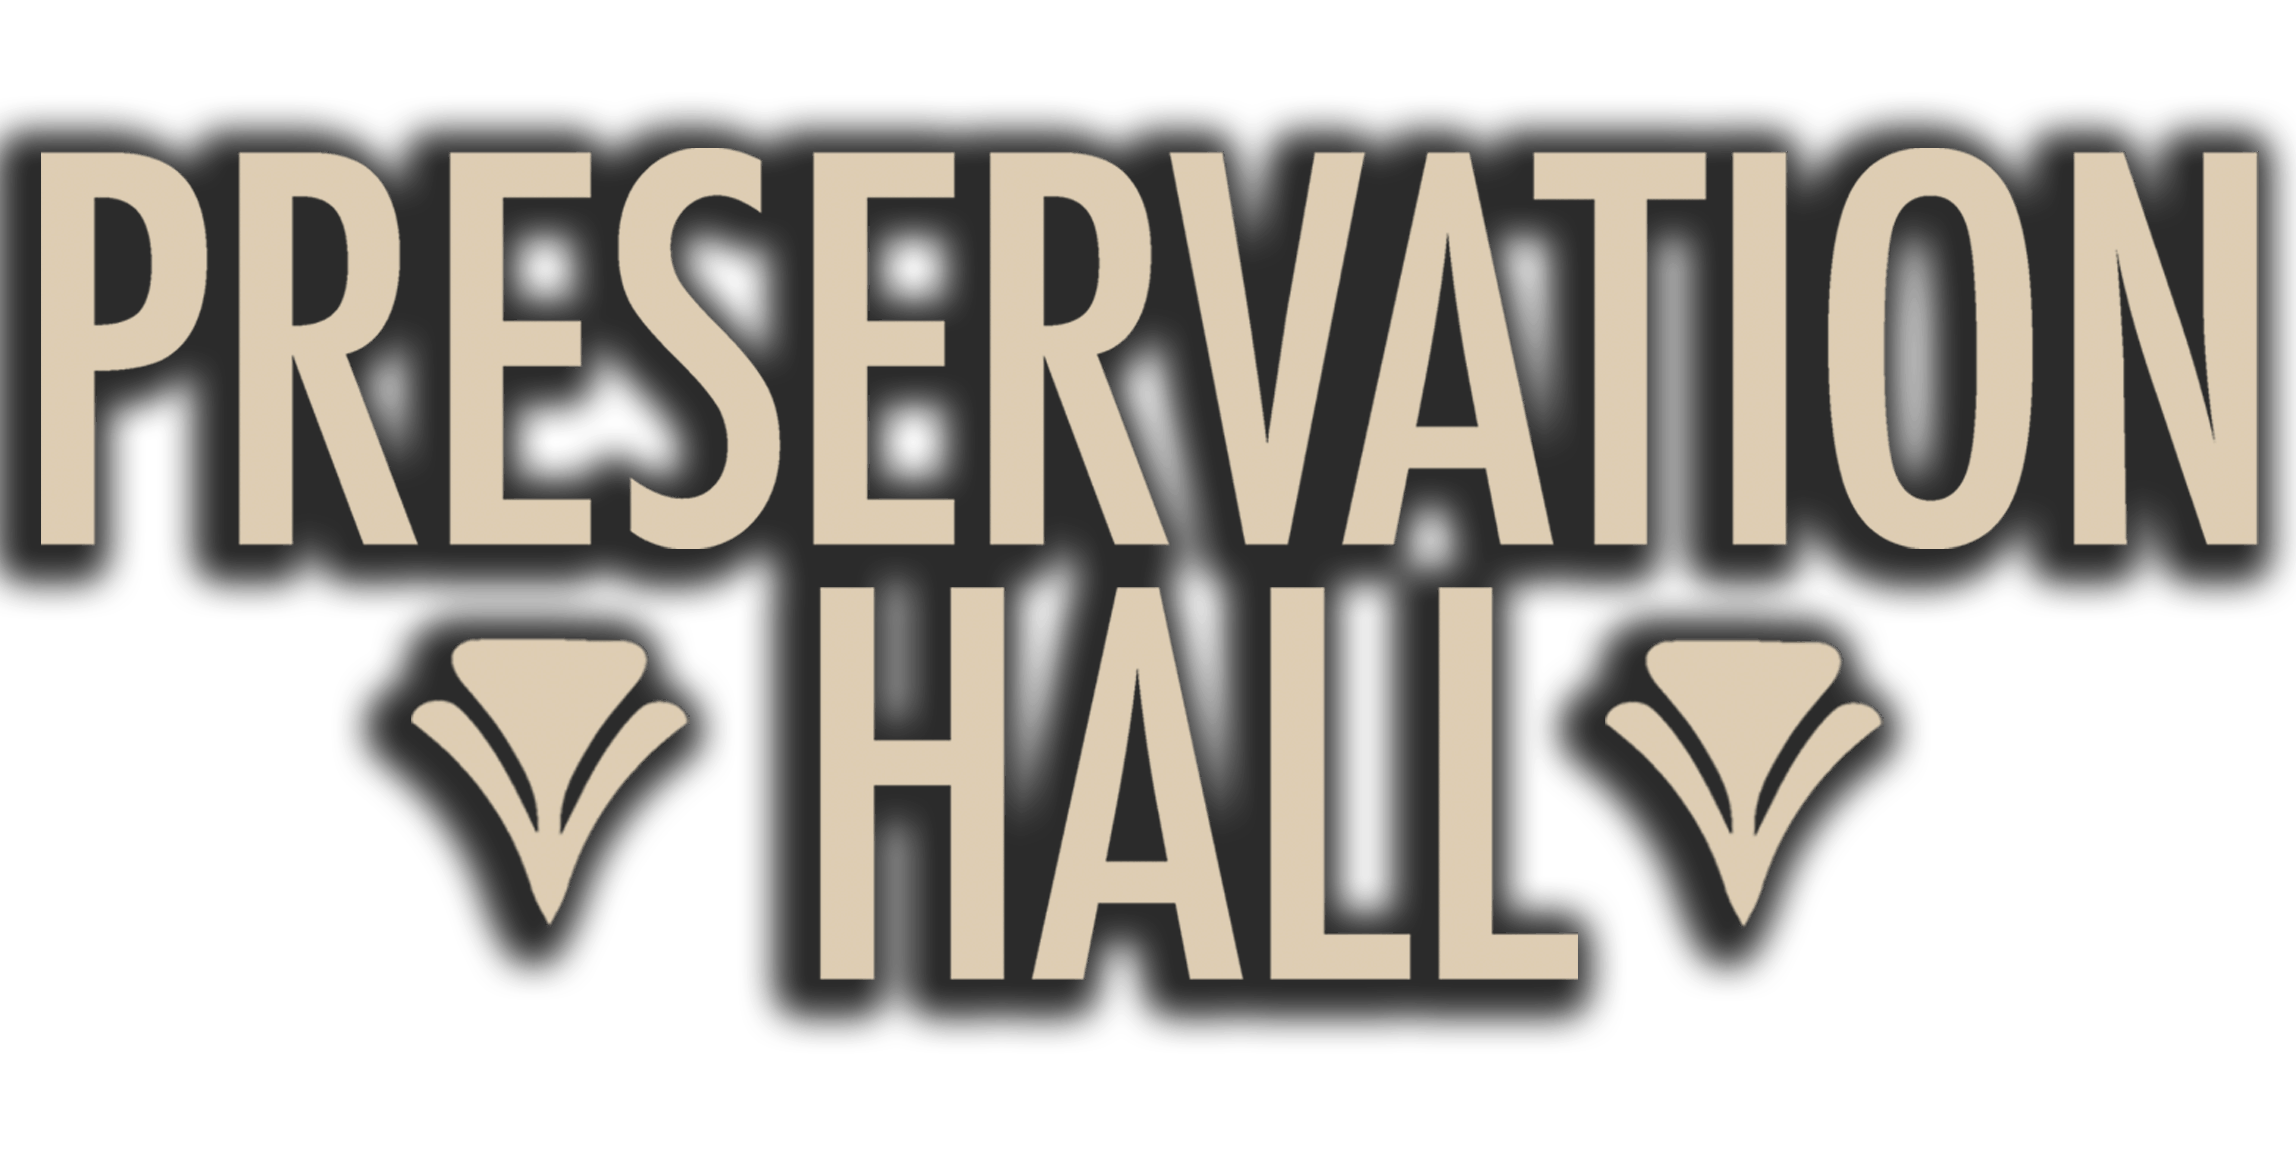 Preservation Hall Blog